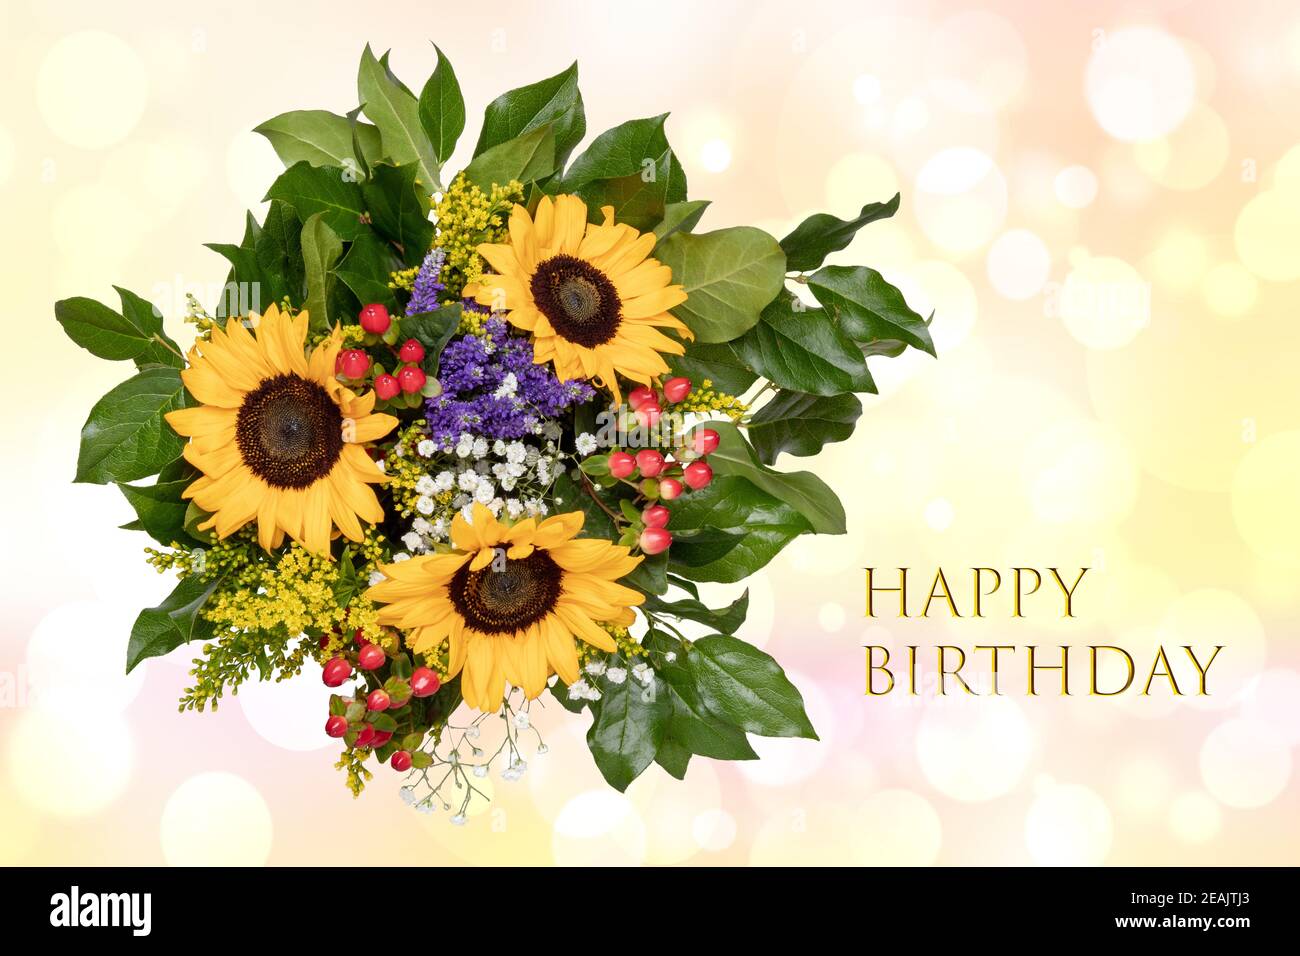 Happy Birthday Karte Design mit einem wunderschönen blühenden Blumenstrauß von Sonnenblumen auf einem hellen abstrakten zarten Pastell verschwommen Hintergrund. Stockfoto